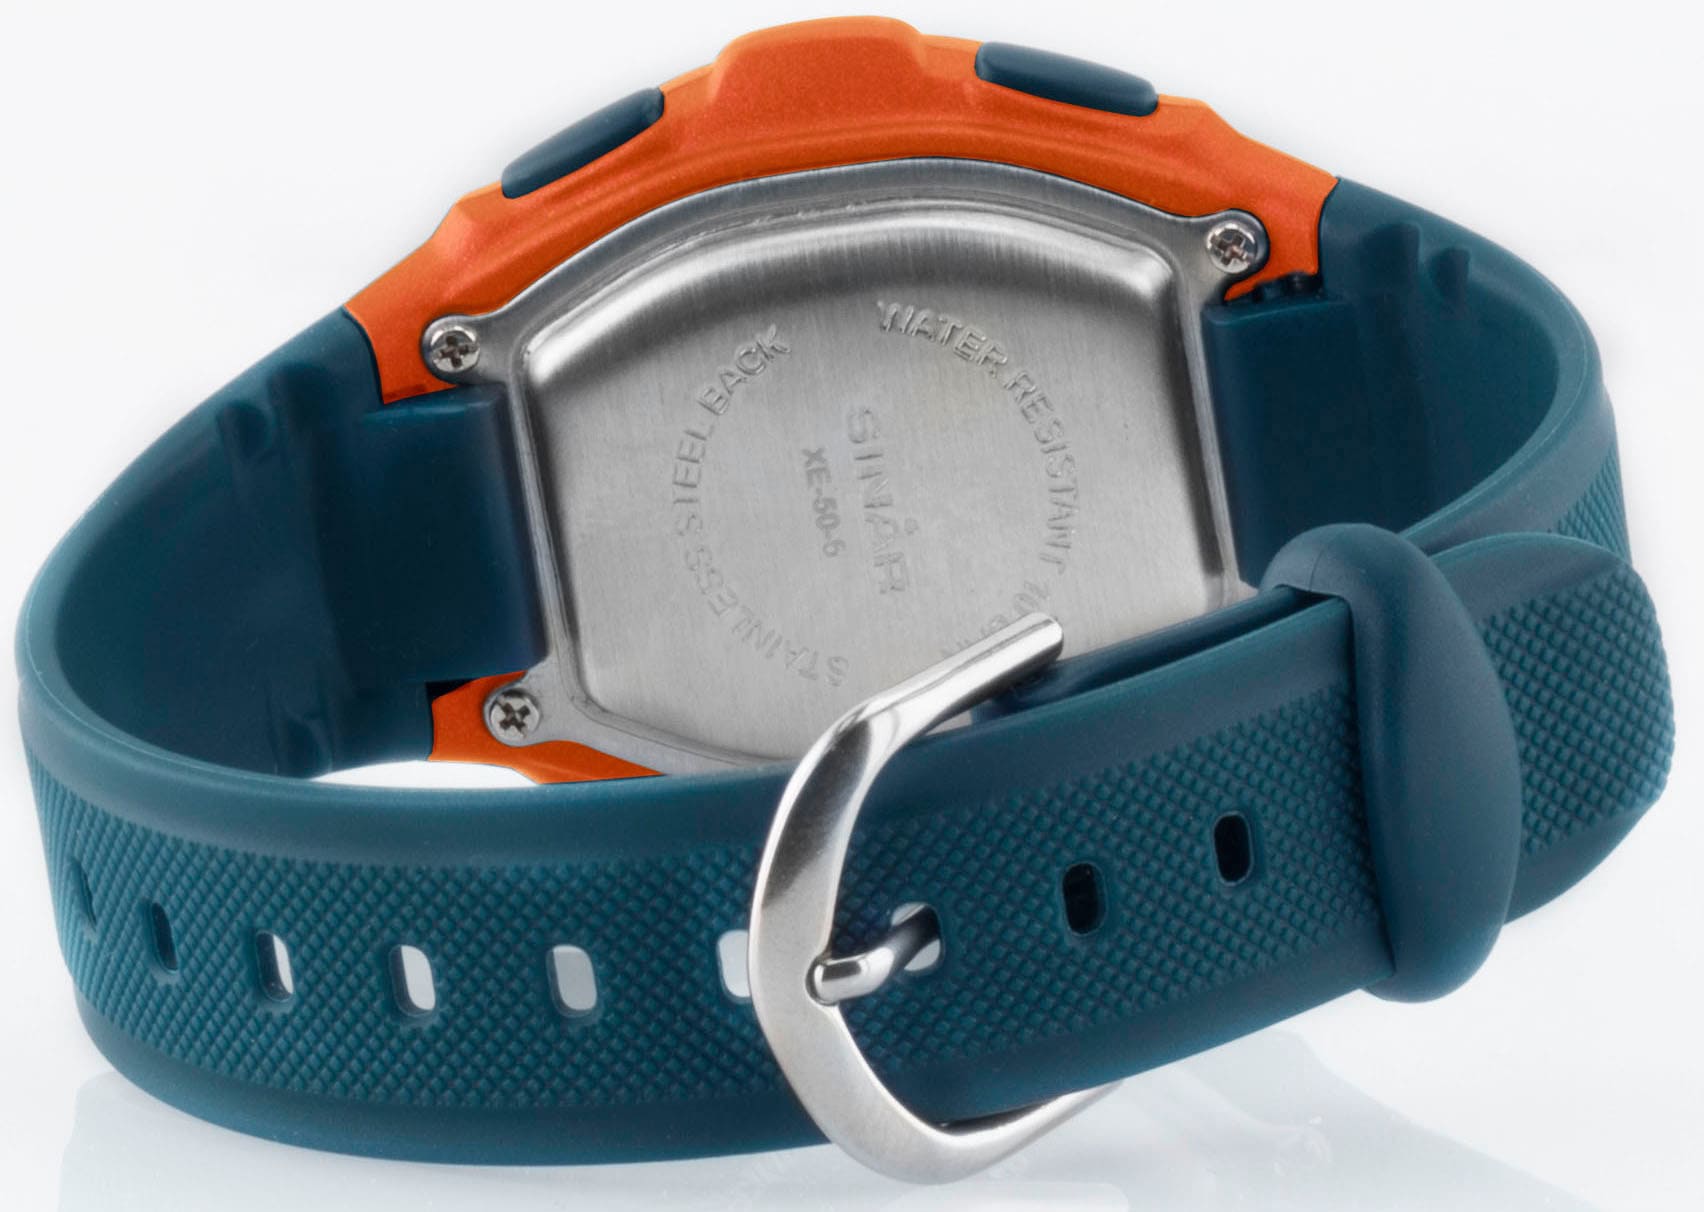 SINAR Quarzuhr »XE-50-6«, Armbanduhr, Kinderuhr, digital, Datum, ideal auch als Geschenk